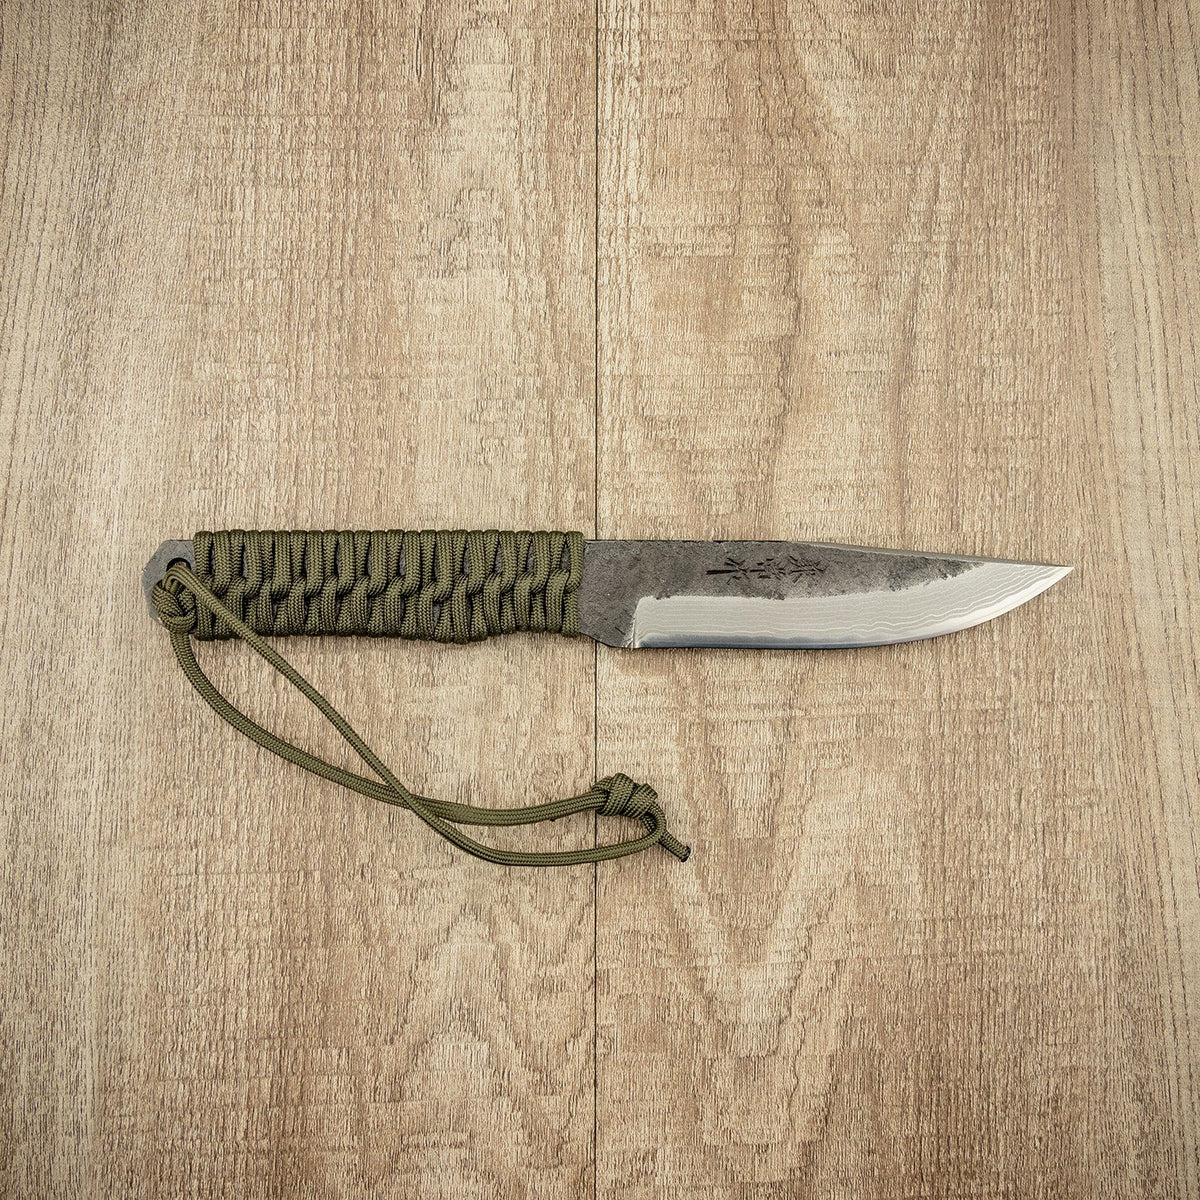 Seki Kanetsune &quot;KURO-TSUNO&quot; Outdoor Knife 120MM